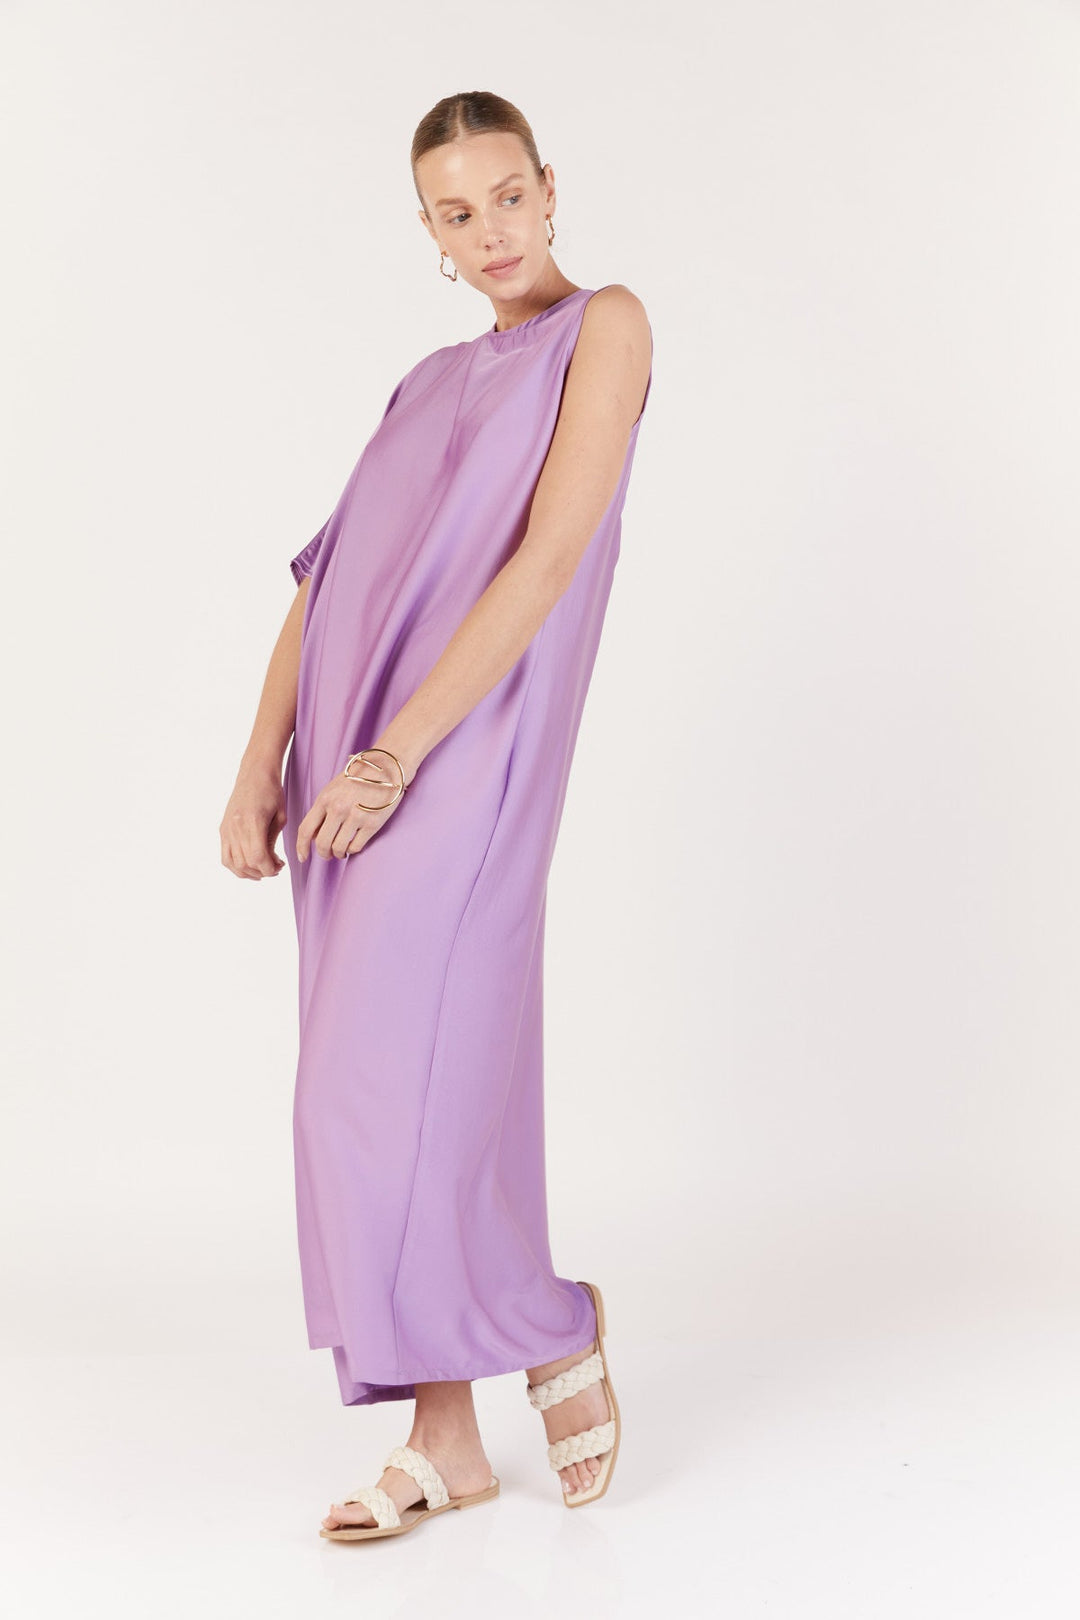 שמלת מקסי כרמן בצבע סגול לילך - Dana Sidi